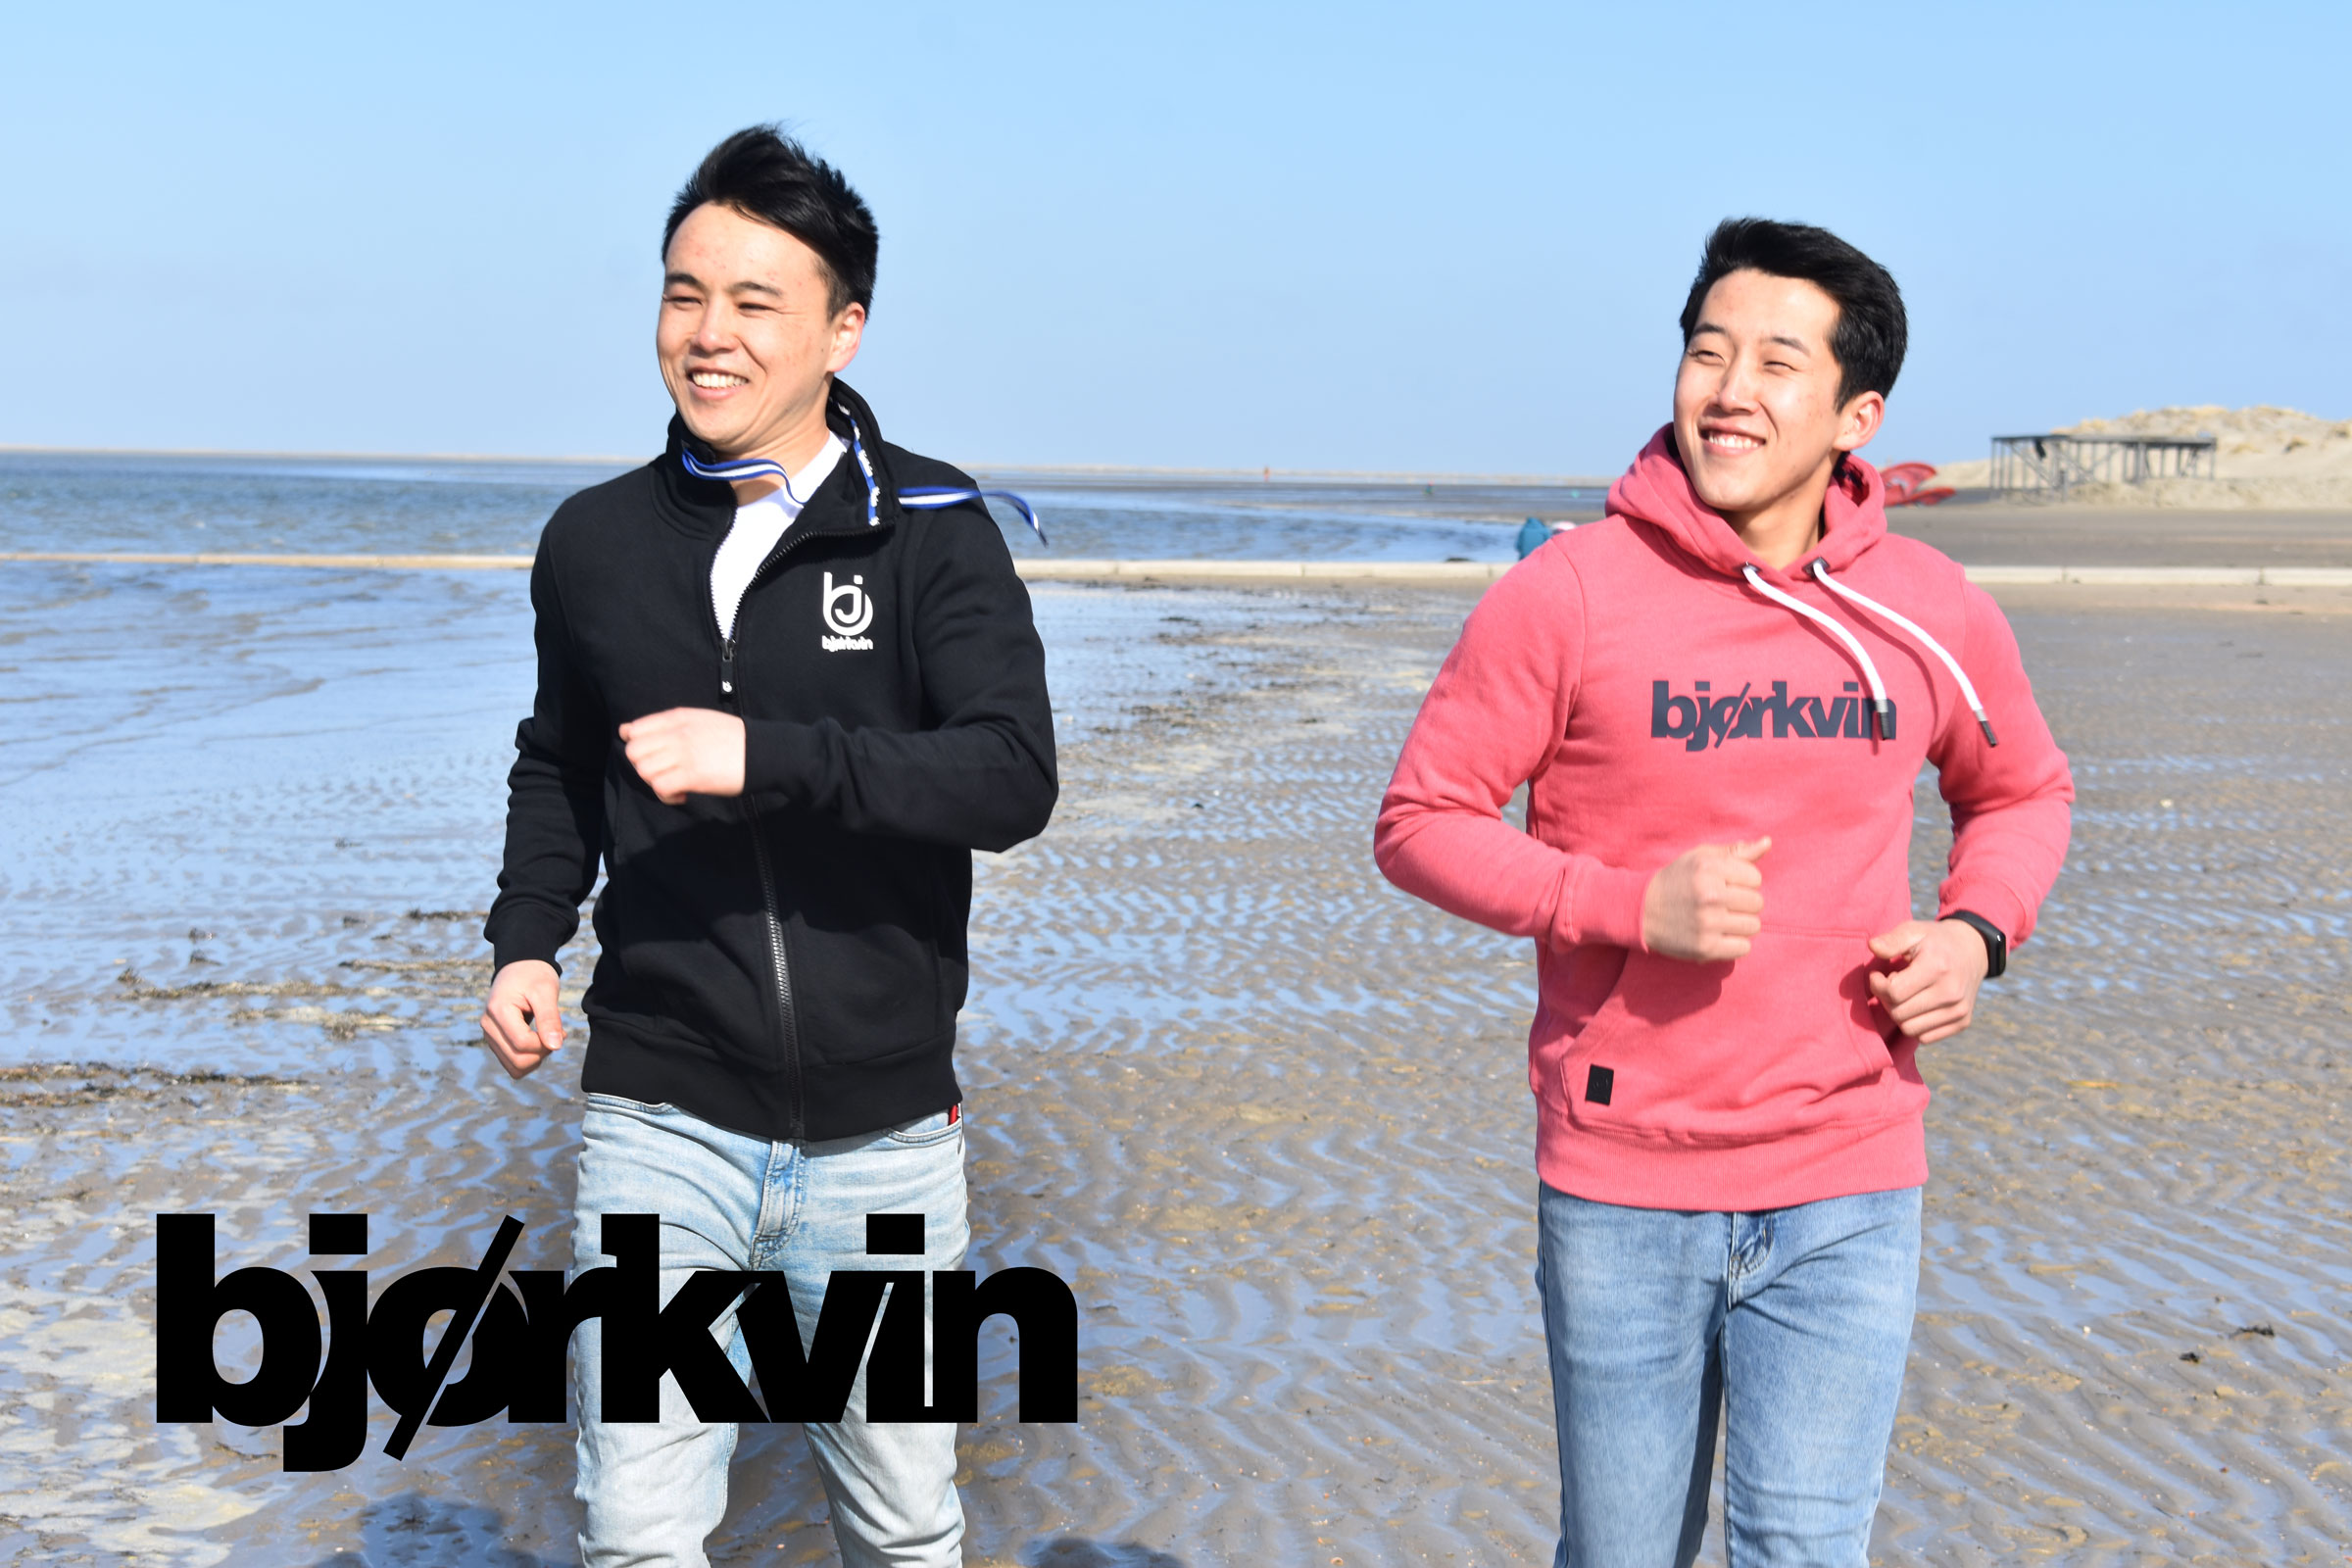 Zwei junge Männer in Björkvin Sweatshirts joggen nebeneinander am Strand